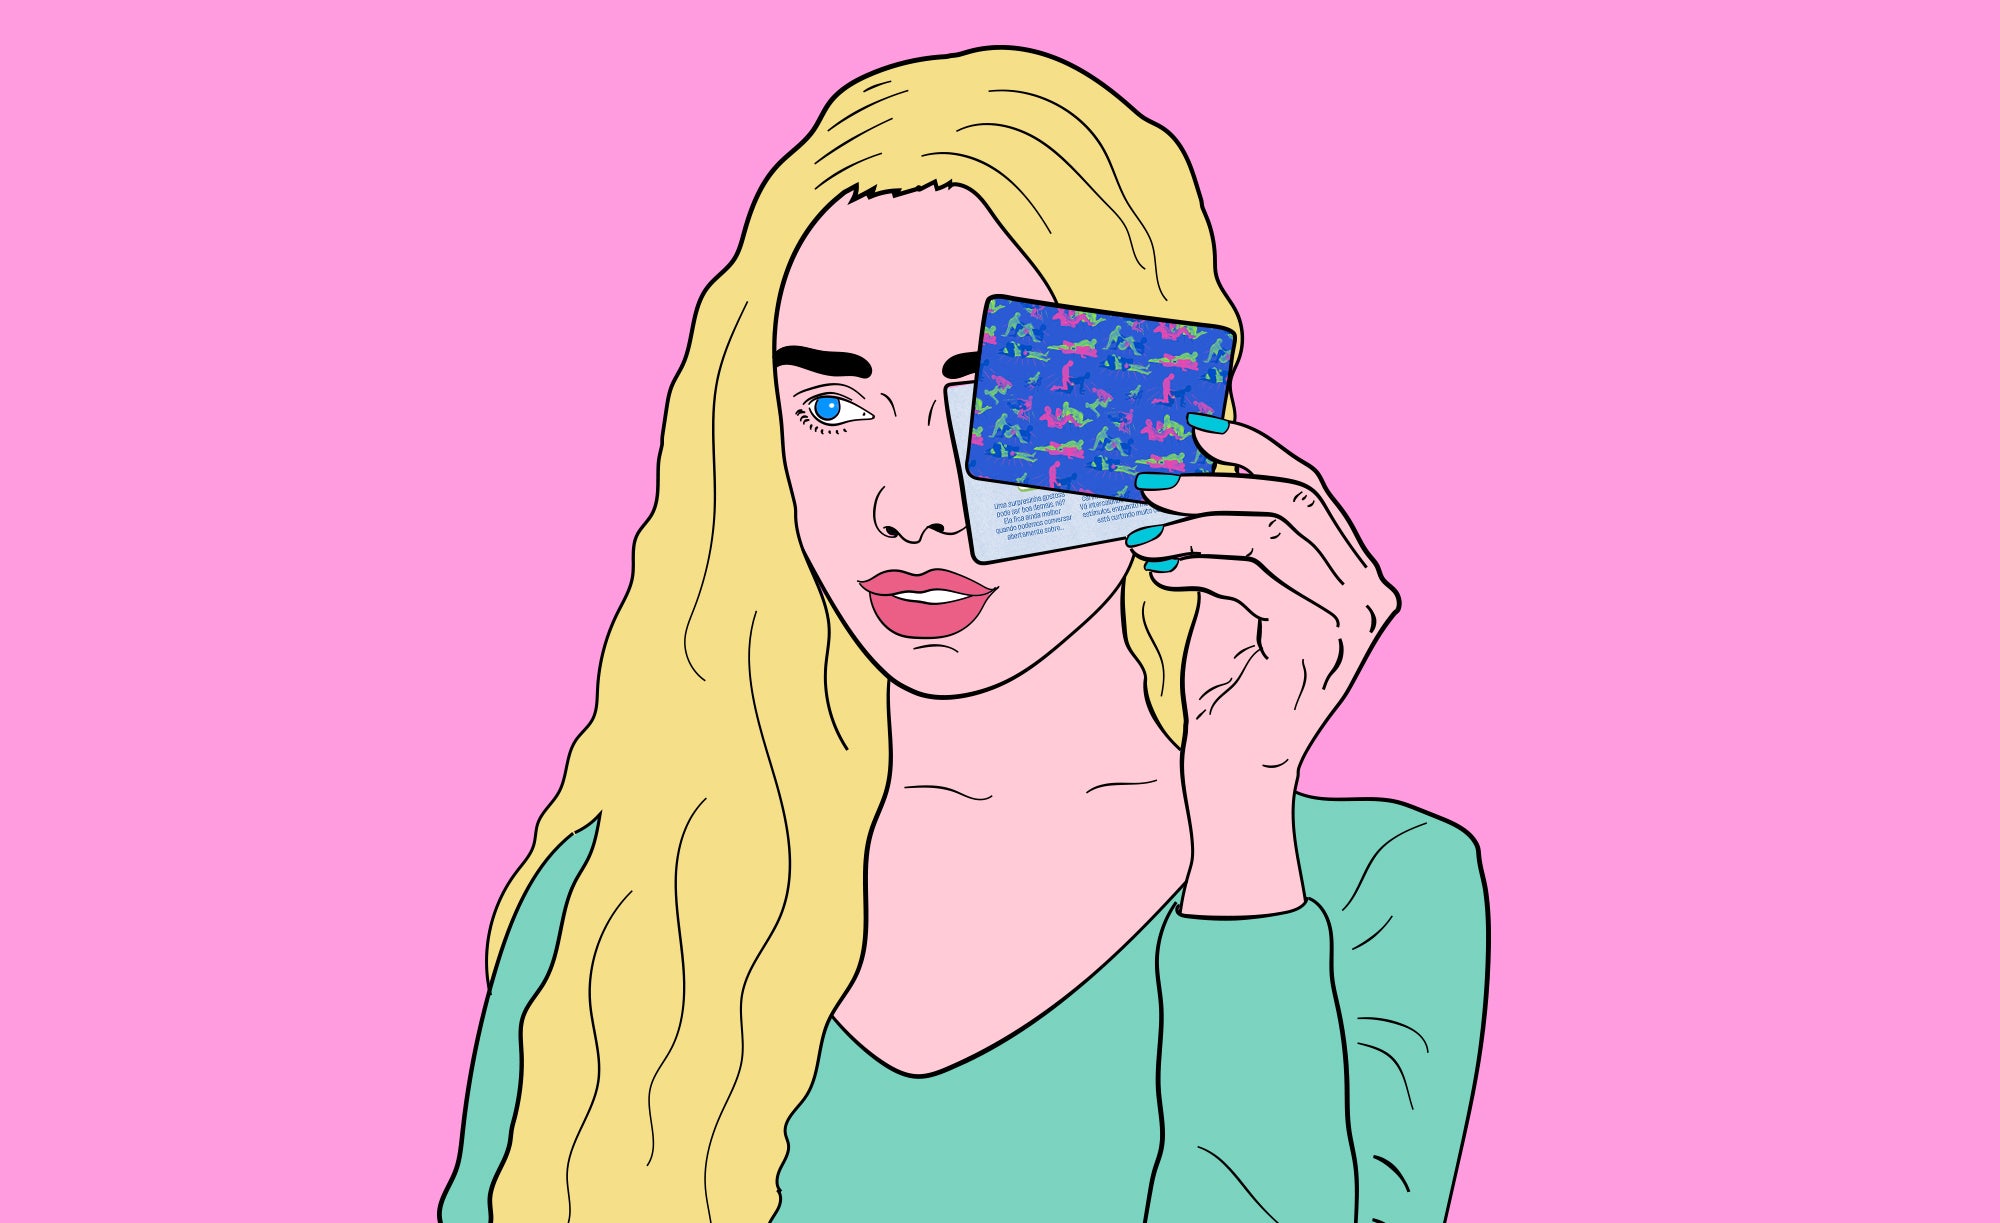 Surpresa de dia dos namorados. Ilustração de uma mulher segurando duas cartas do jogo verdade ou ação da pantynova. Ela tem cabelo amarelo, blusa verde e o fundo é rosa